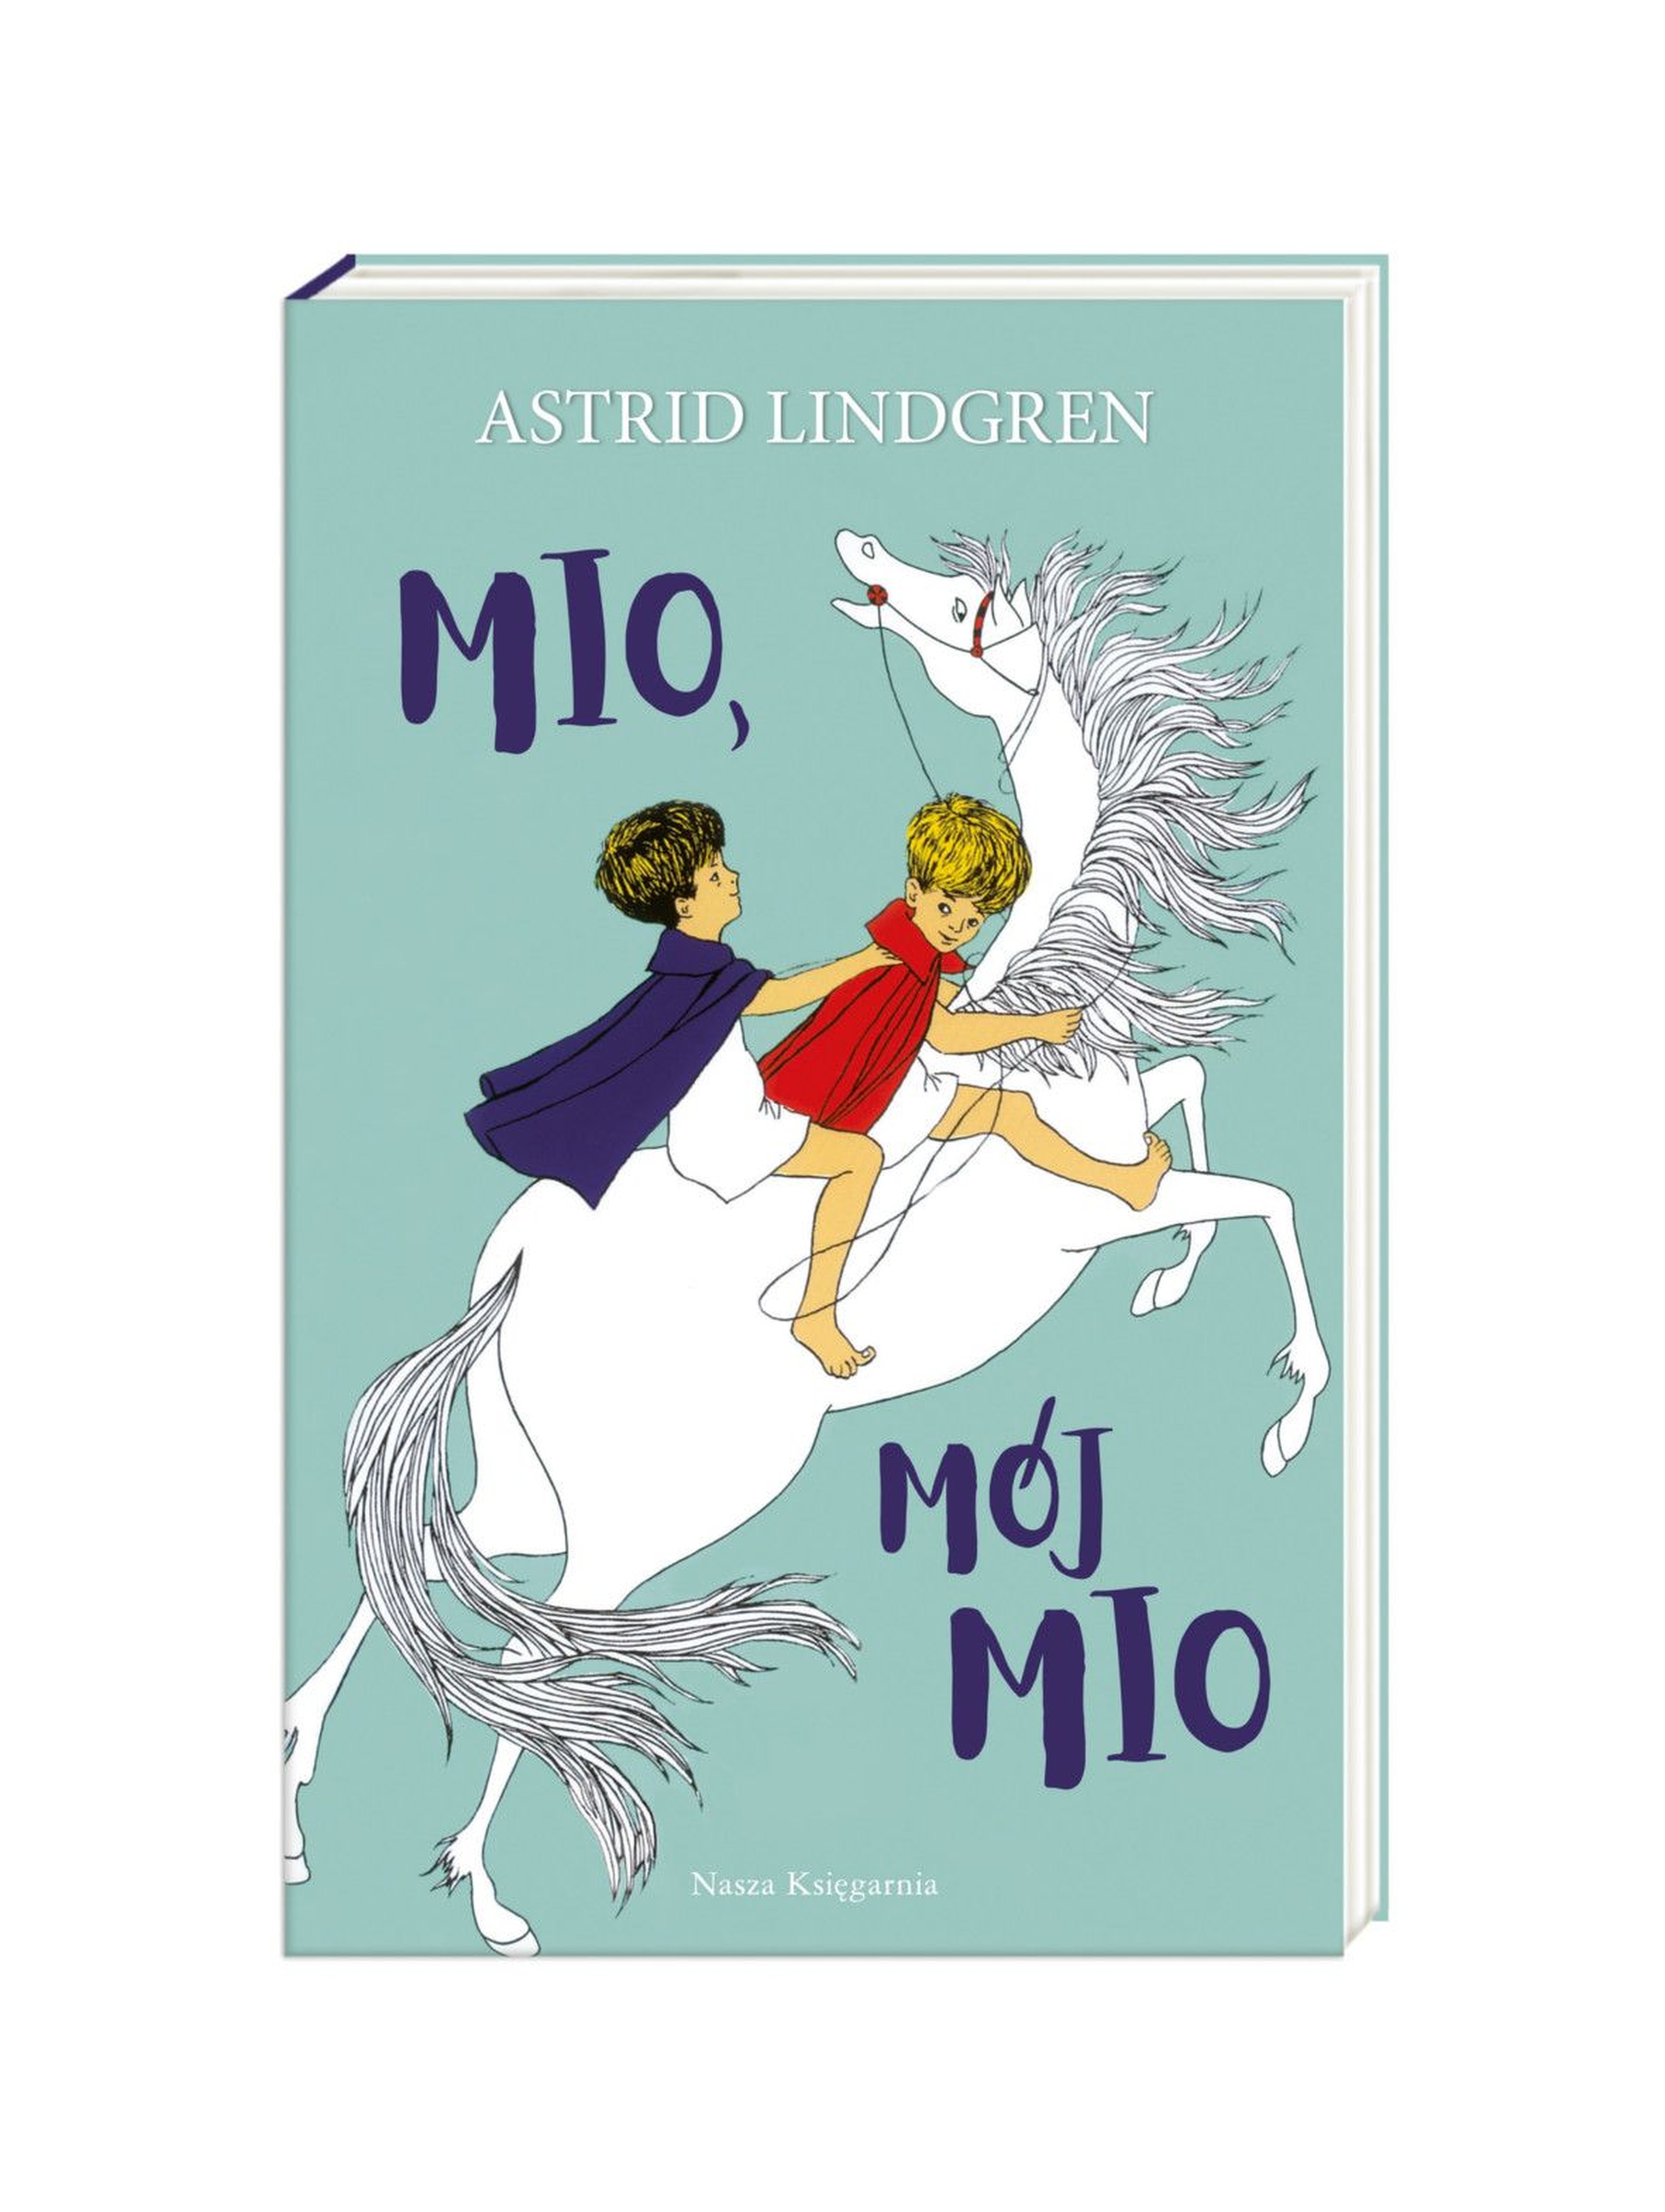 Książka dla dzieci "Mio, mój Mio"